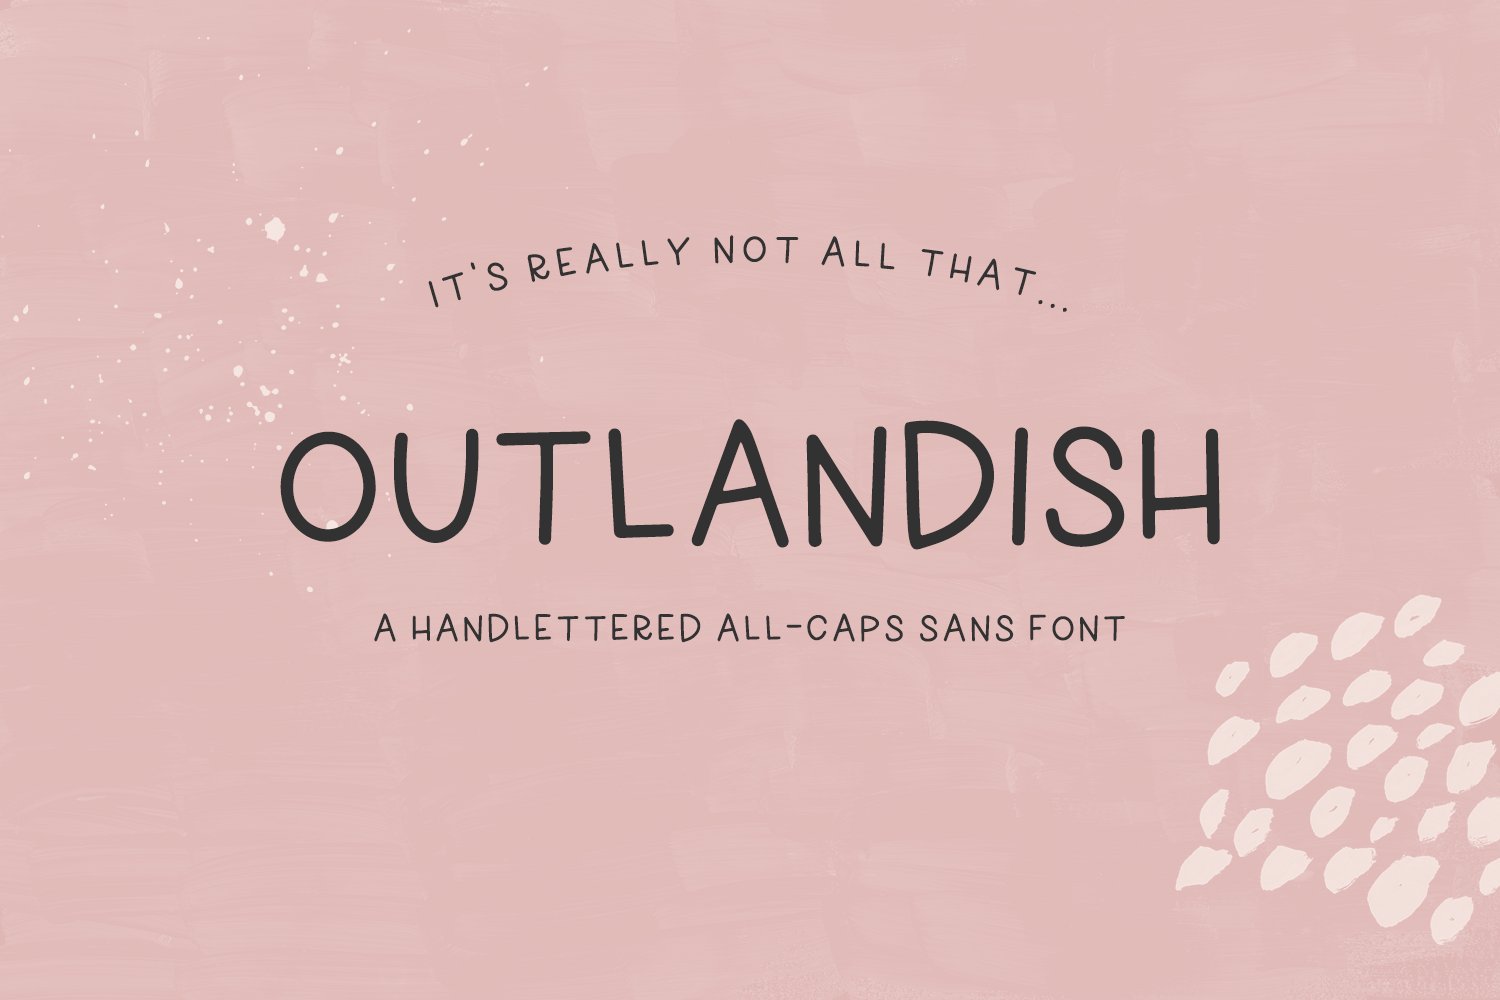 Outlandish Sans cover image.